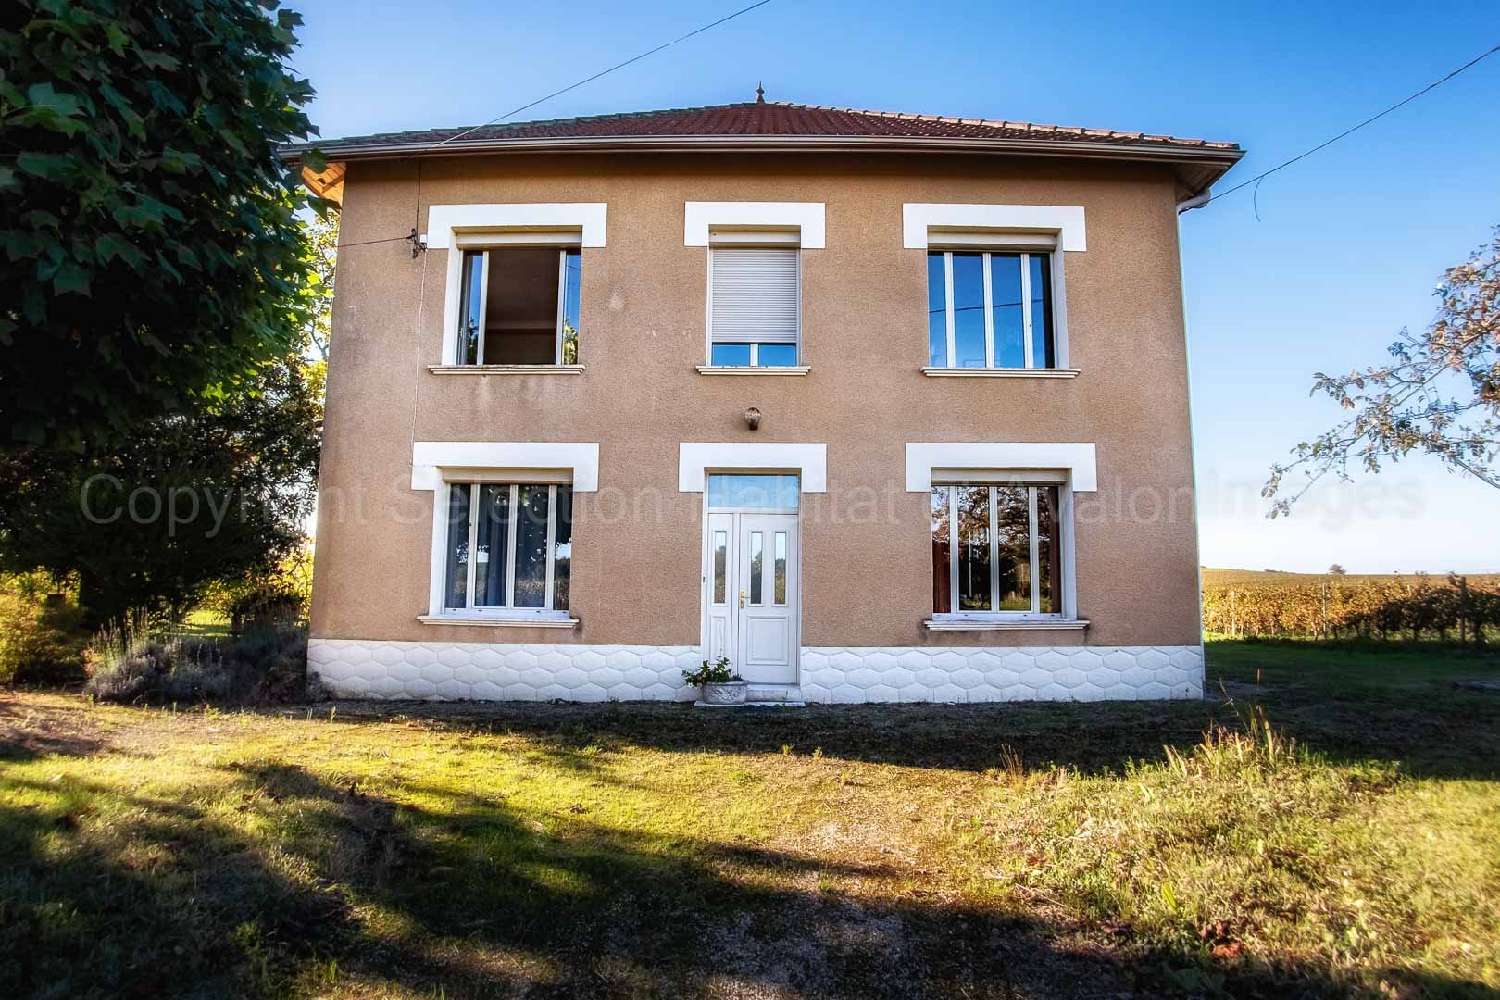  à vendre maison bourgeoise Saussignac Dordogne 5